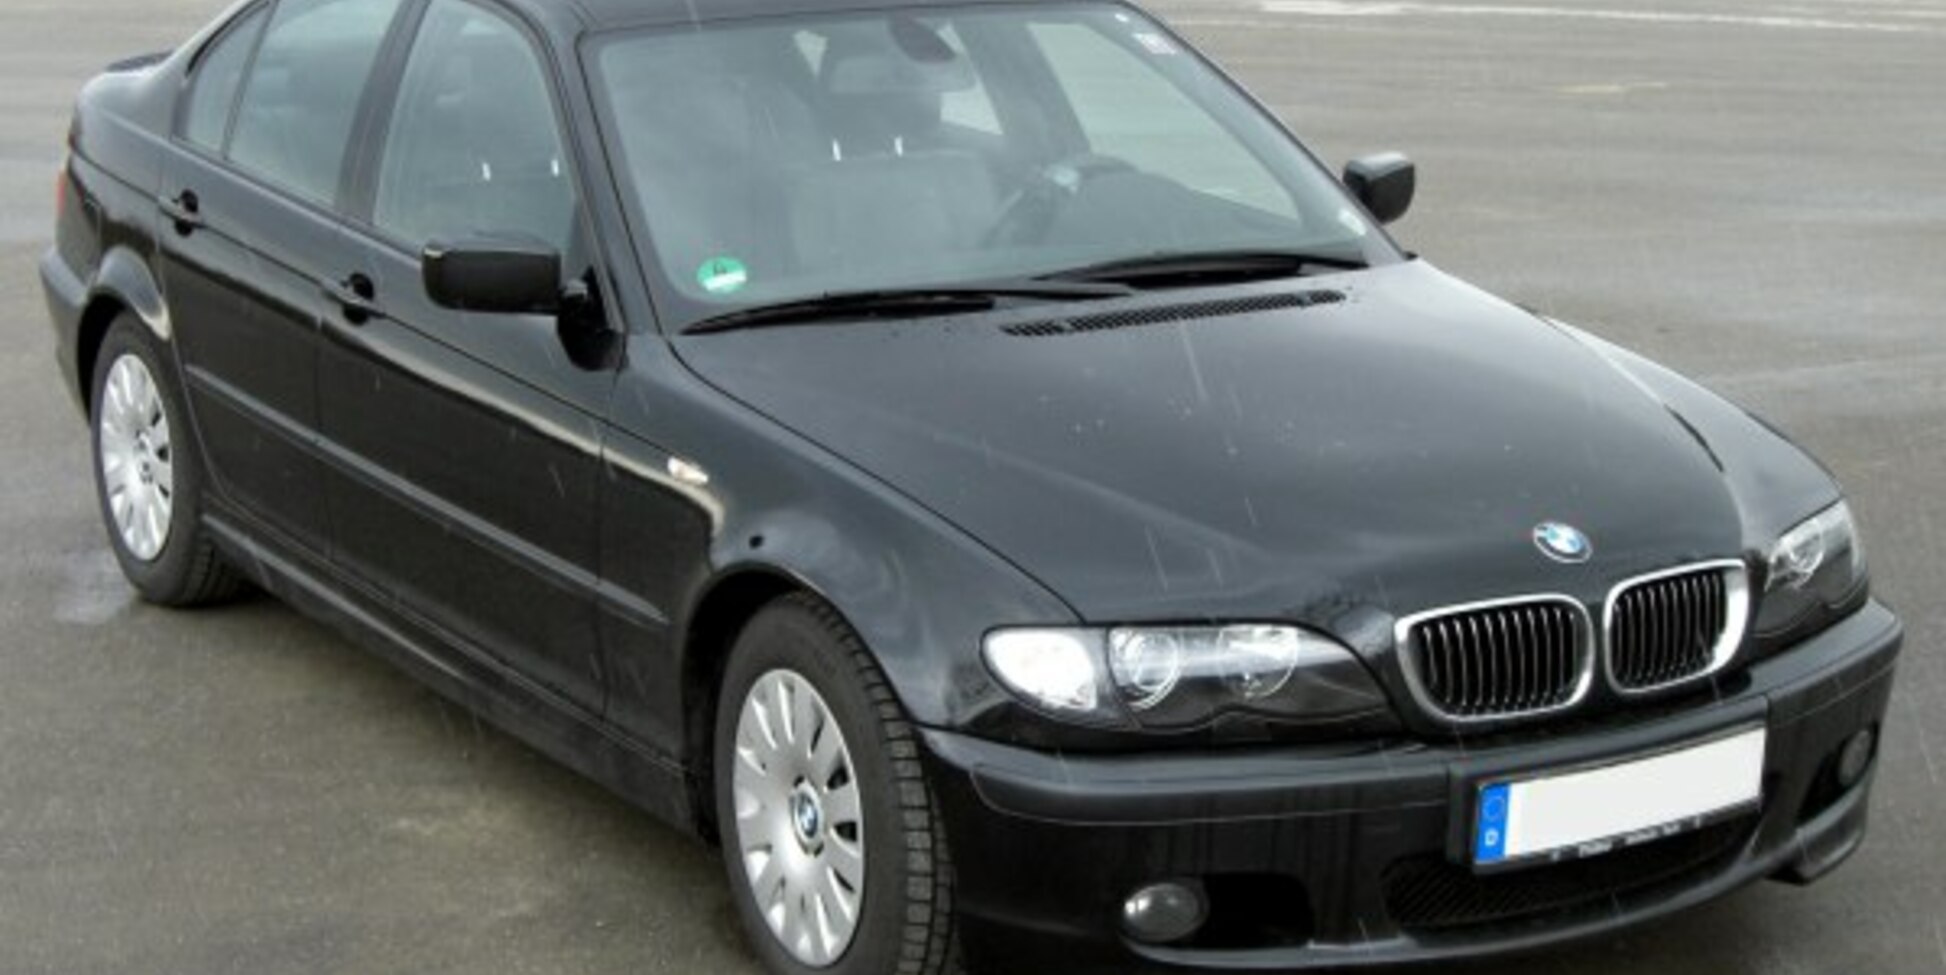 BMW 325i 2004 giá 255 triệu đồng  Xế sang cho người tìm xe cỏ